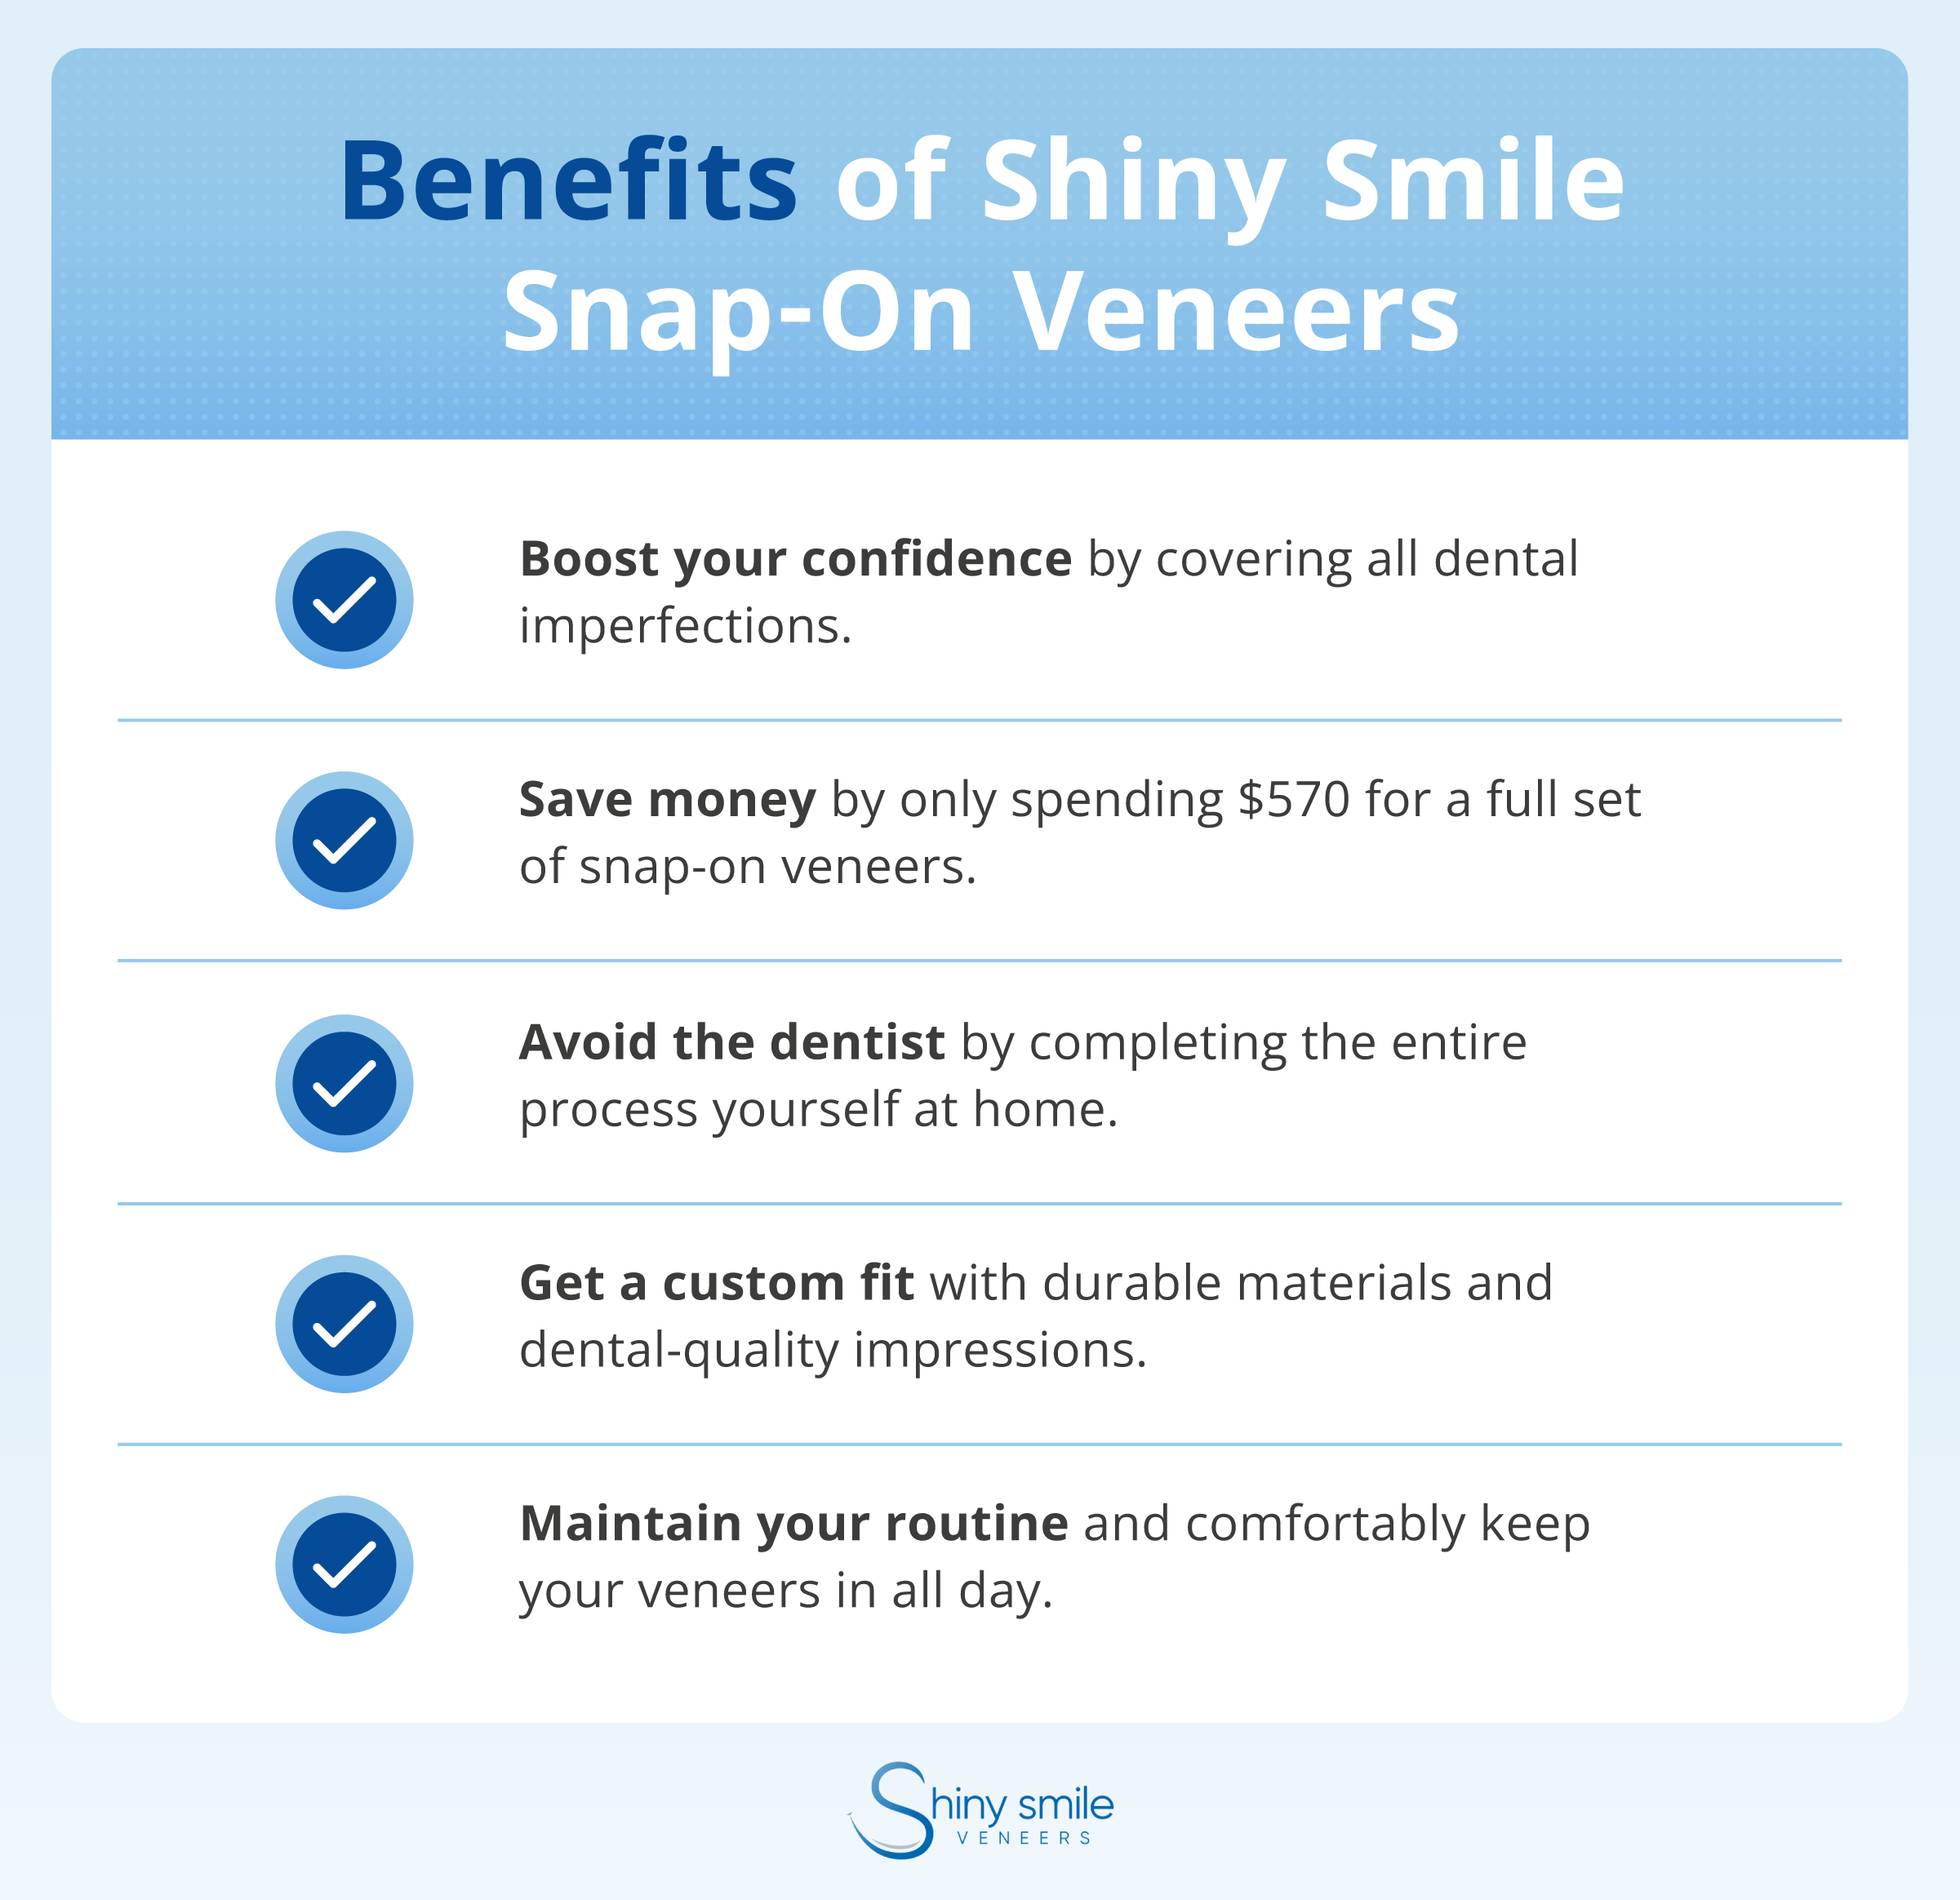 benefits of snap-on veneers as tooth covers 